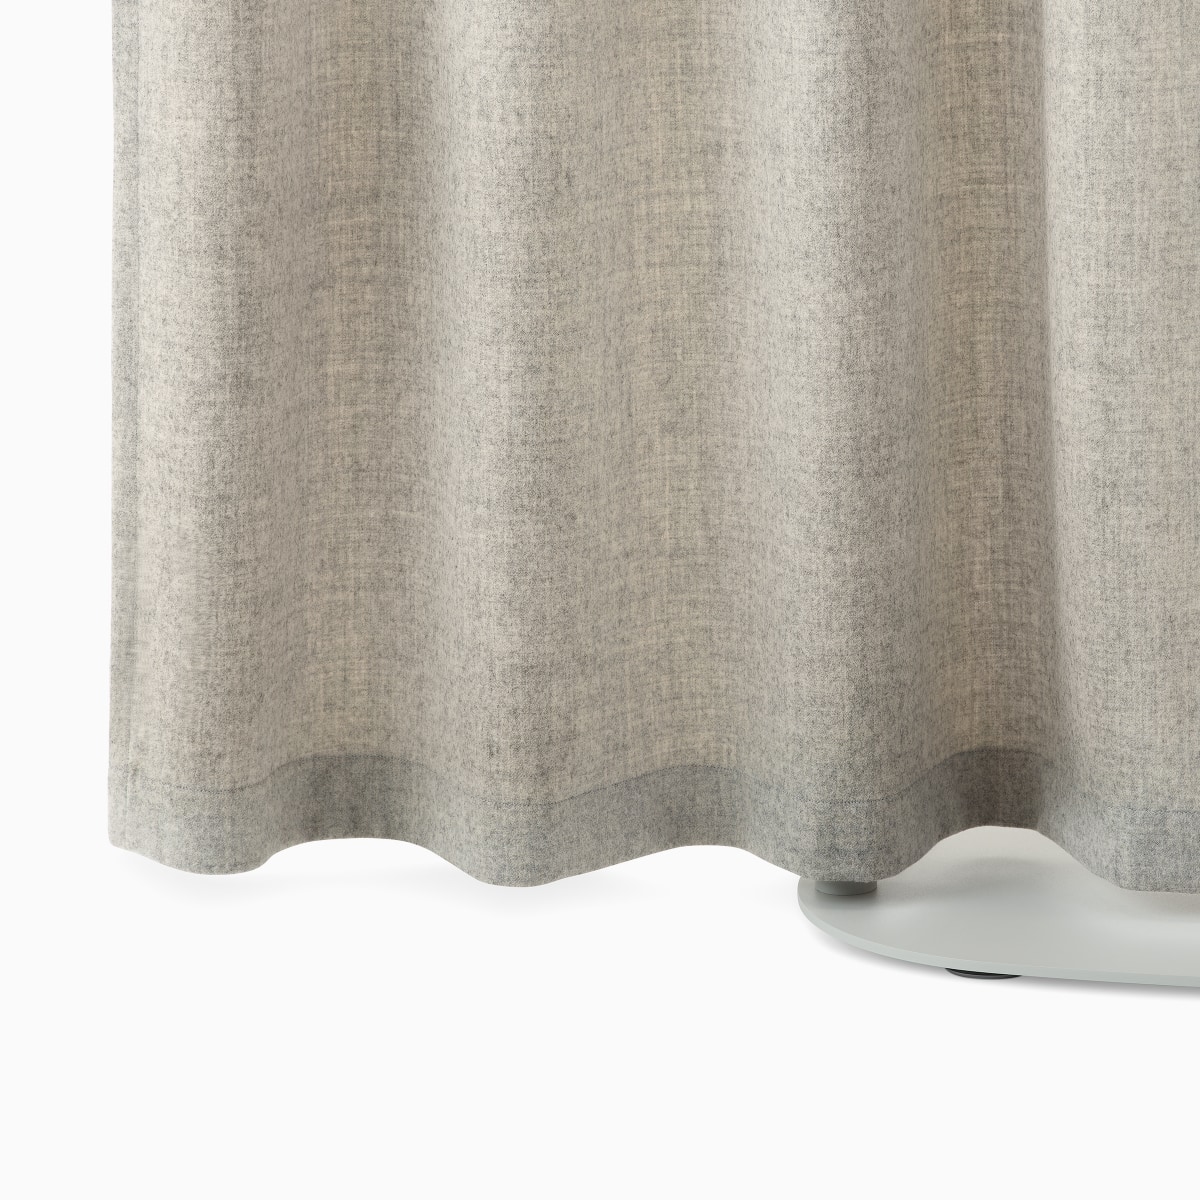 Detalle de una cortina independiente OE1 de color marrón claro con base gris.